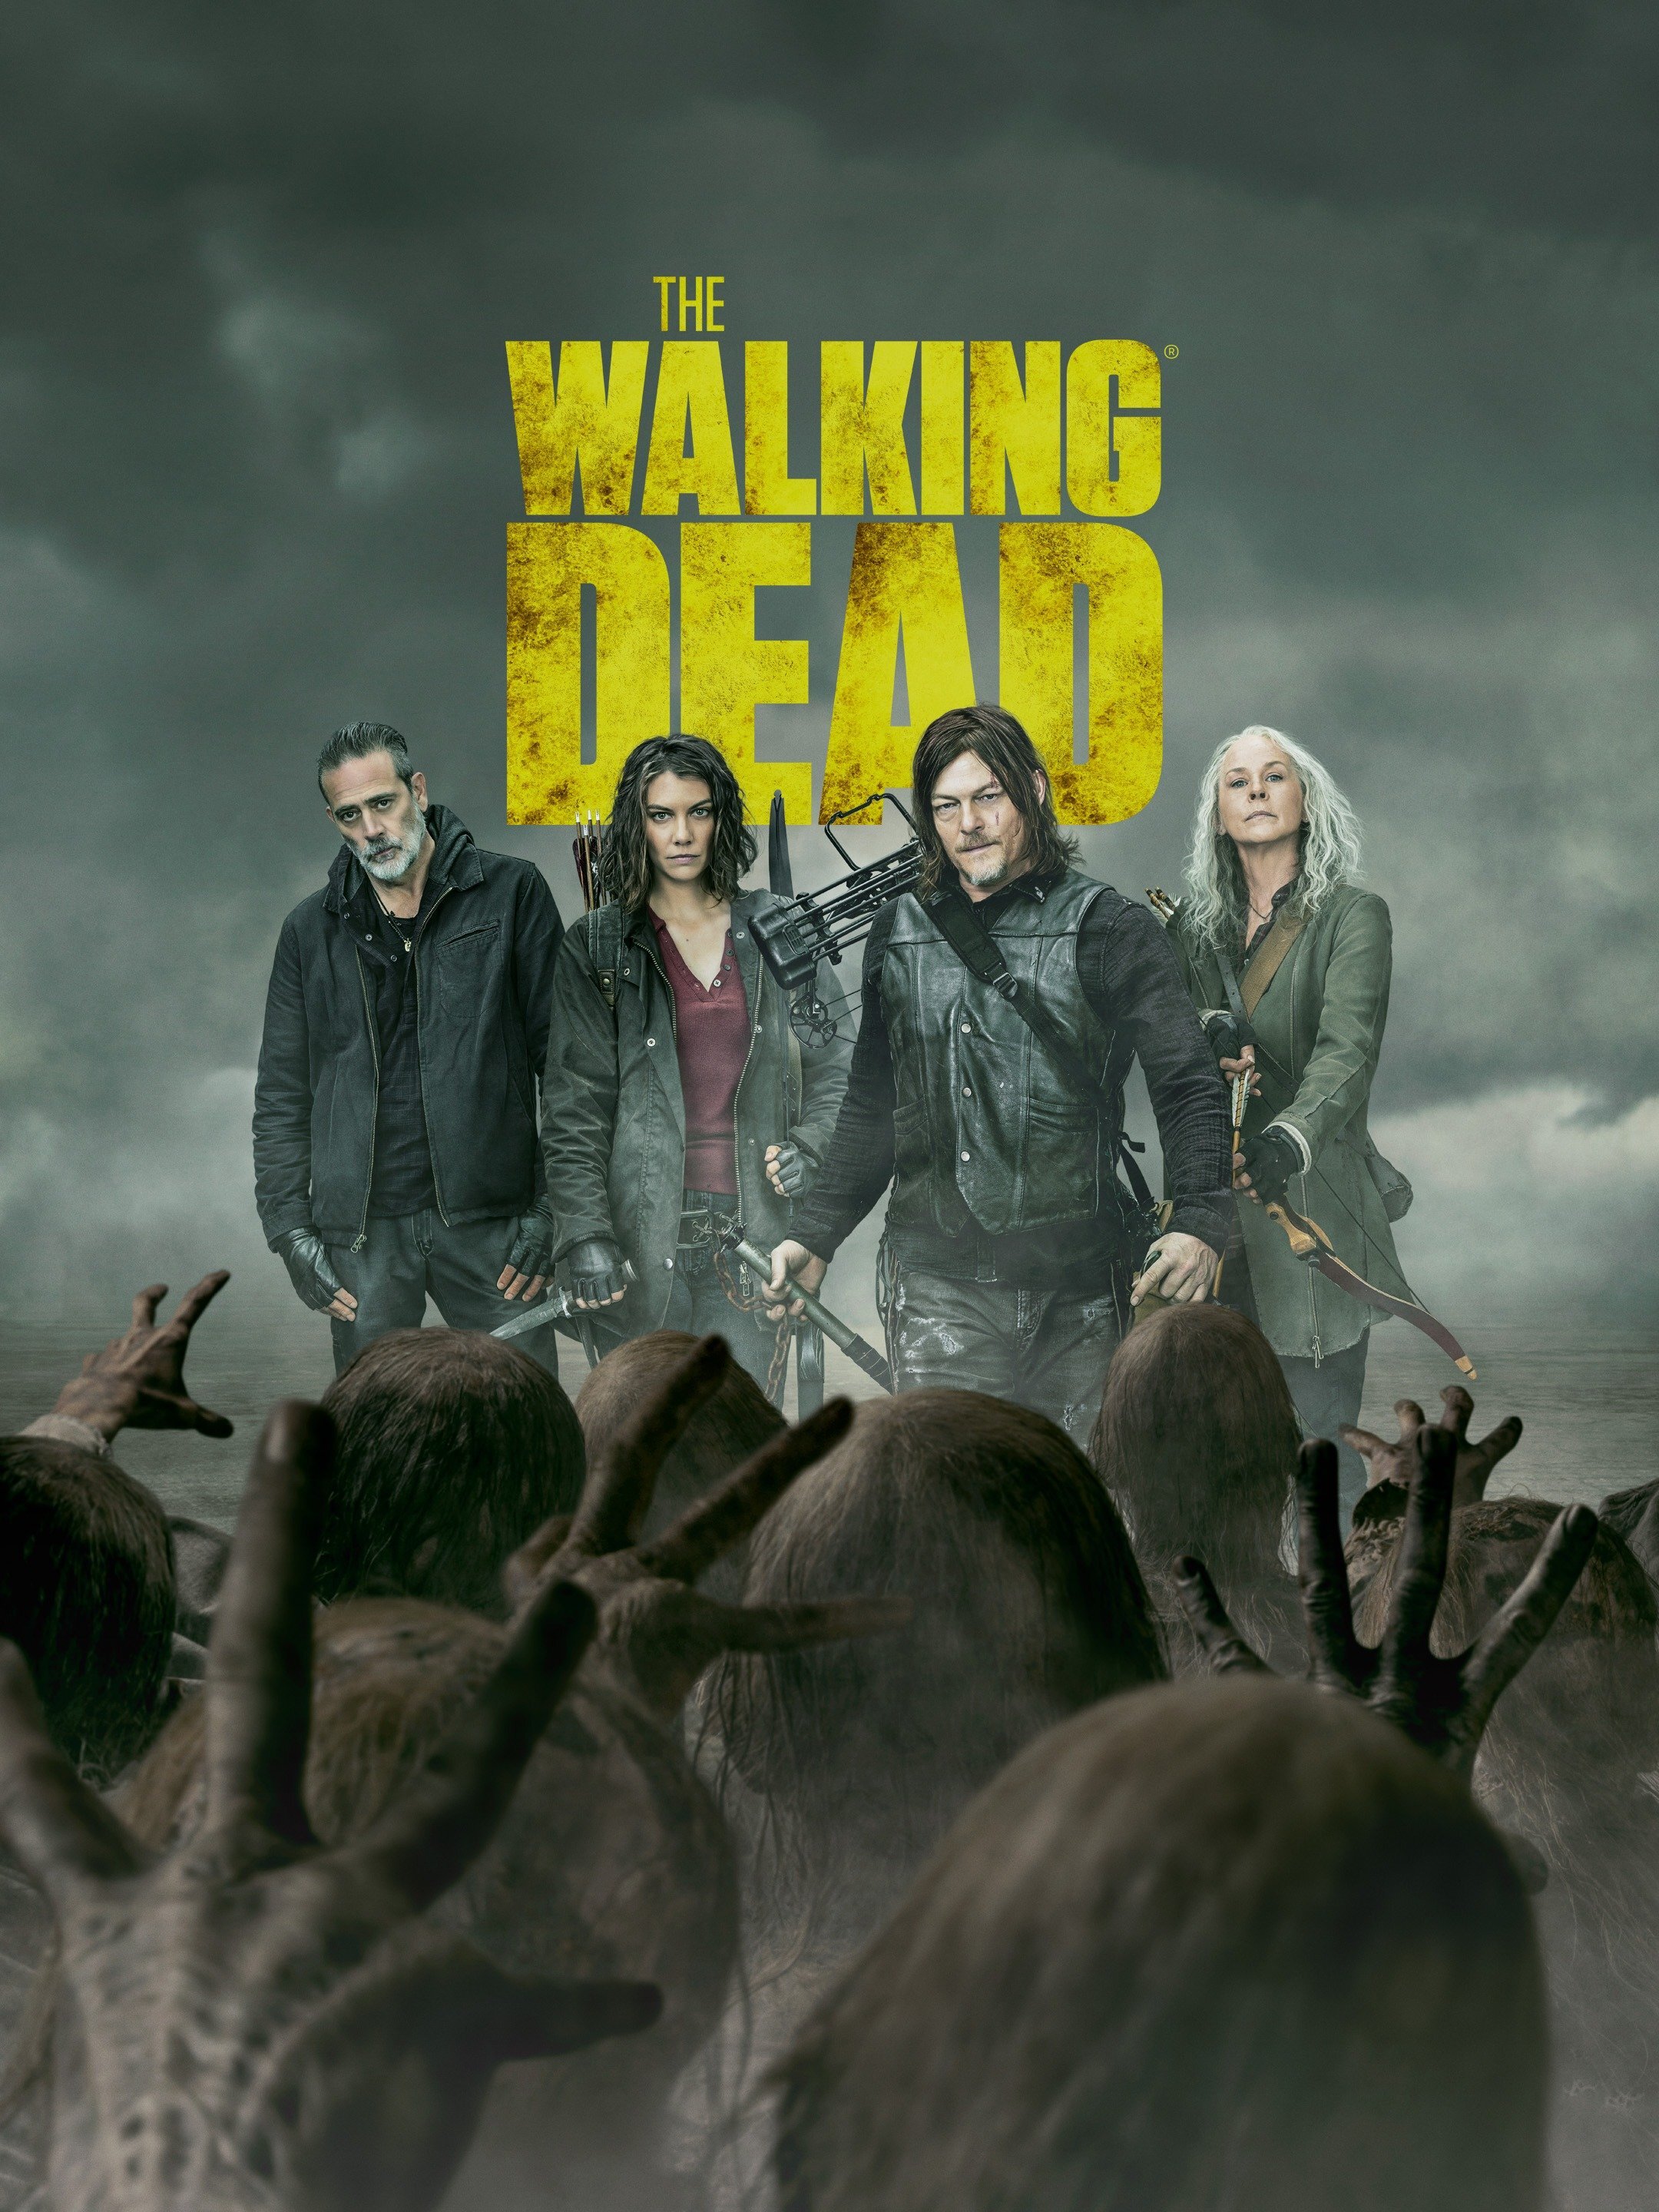 The Walking Dead Season 9 Wallpapers - Wallpaper Cave